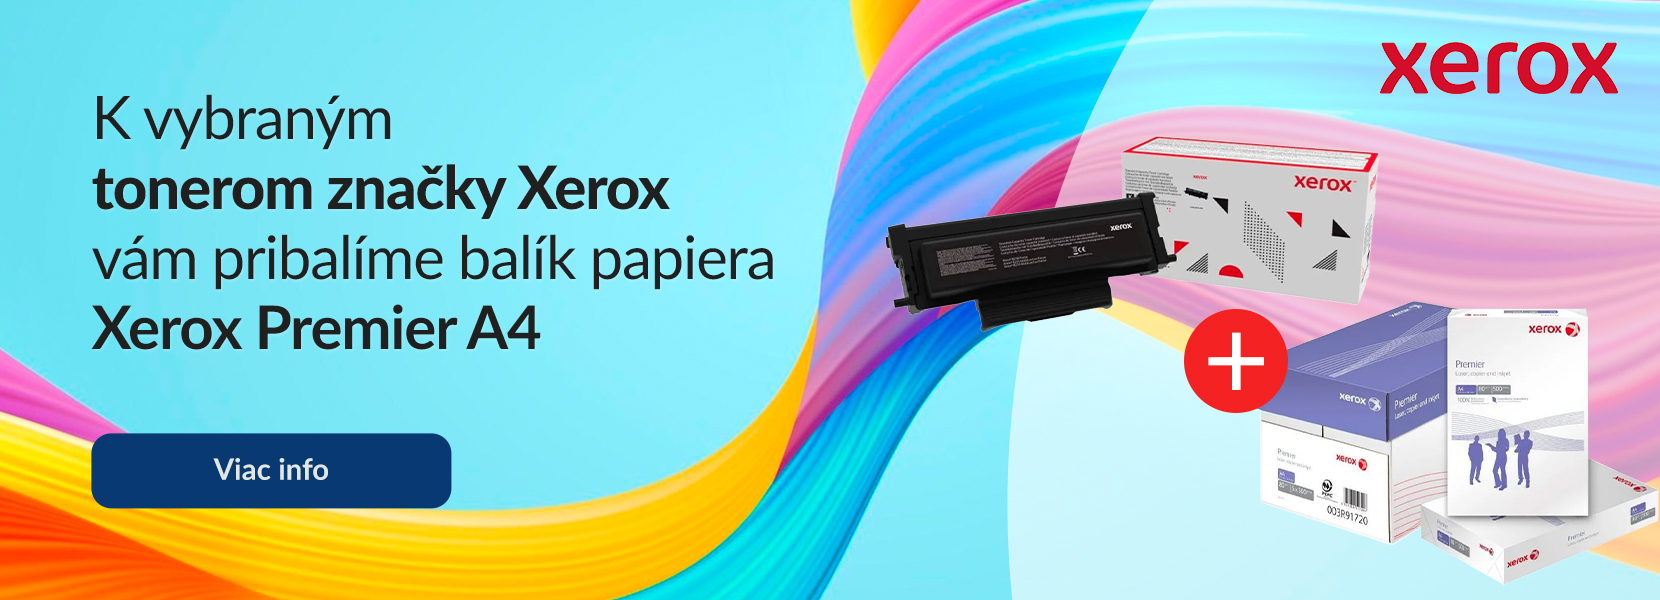 Tonery značky Xerox s darčekom - papier Xerox Premier A4.